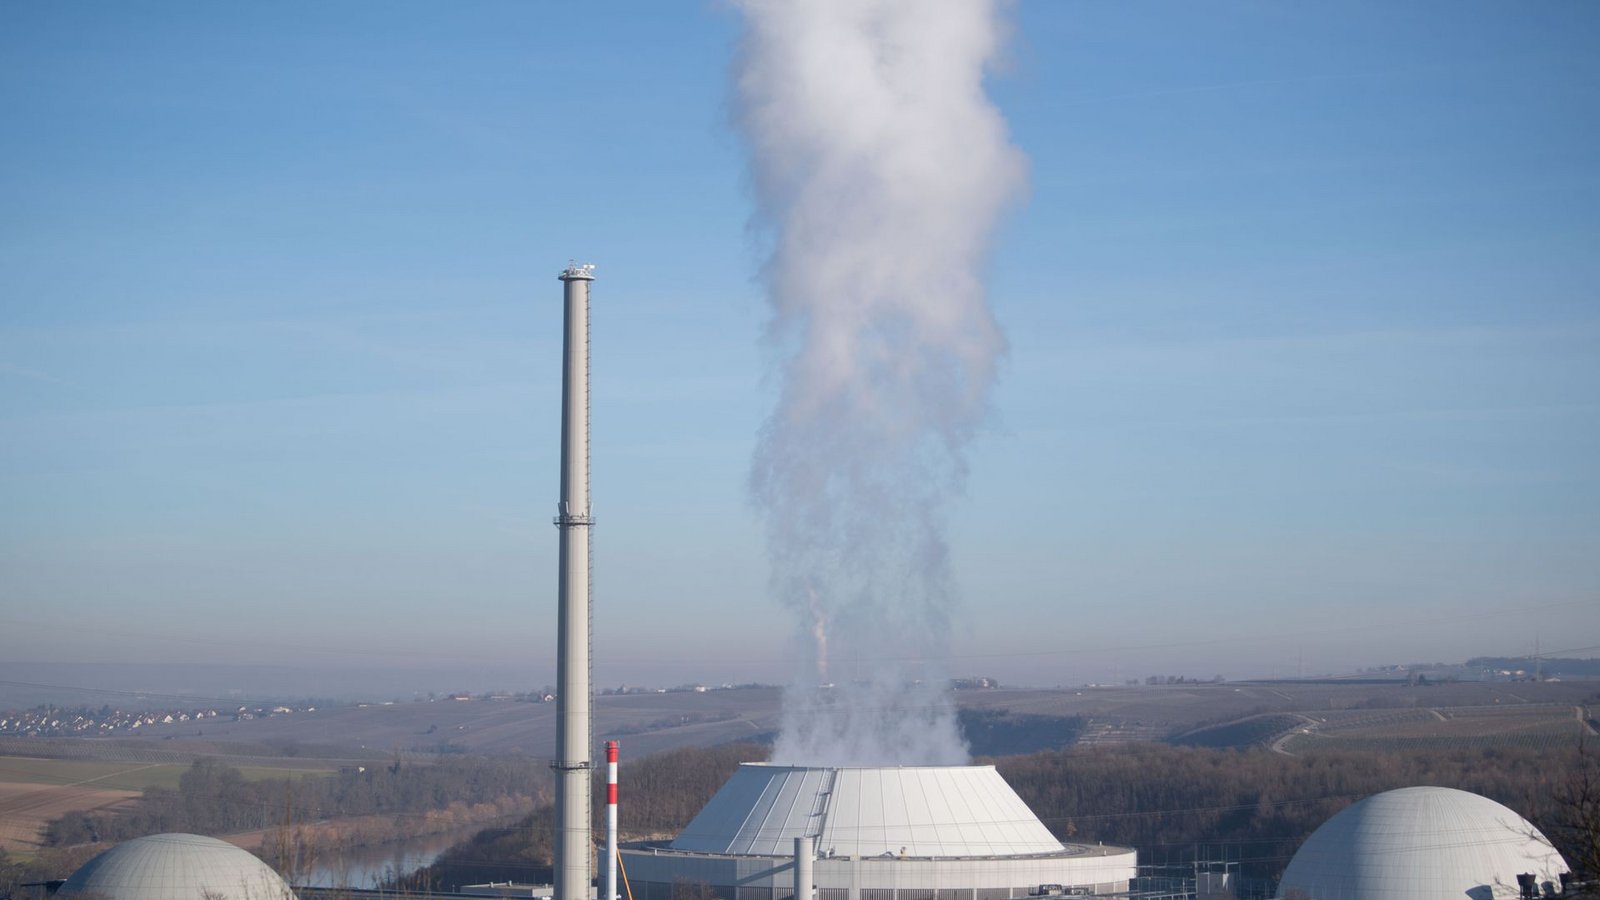 Dampf kommt aus dem Kühlturm (Mitte) von Block 2 des Kernkraftwerks Neckarwestheim, daneben sind Block 1 (links) und Block 2 (rechts) zu sehen.Foto: dp/Marijan Murat